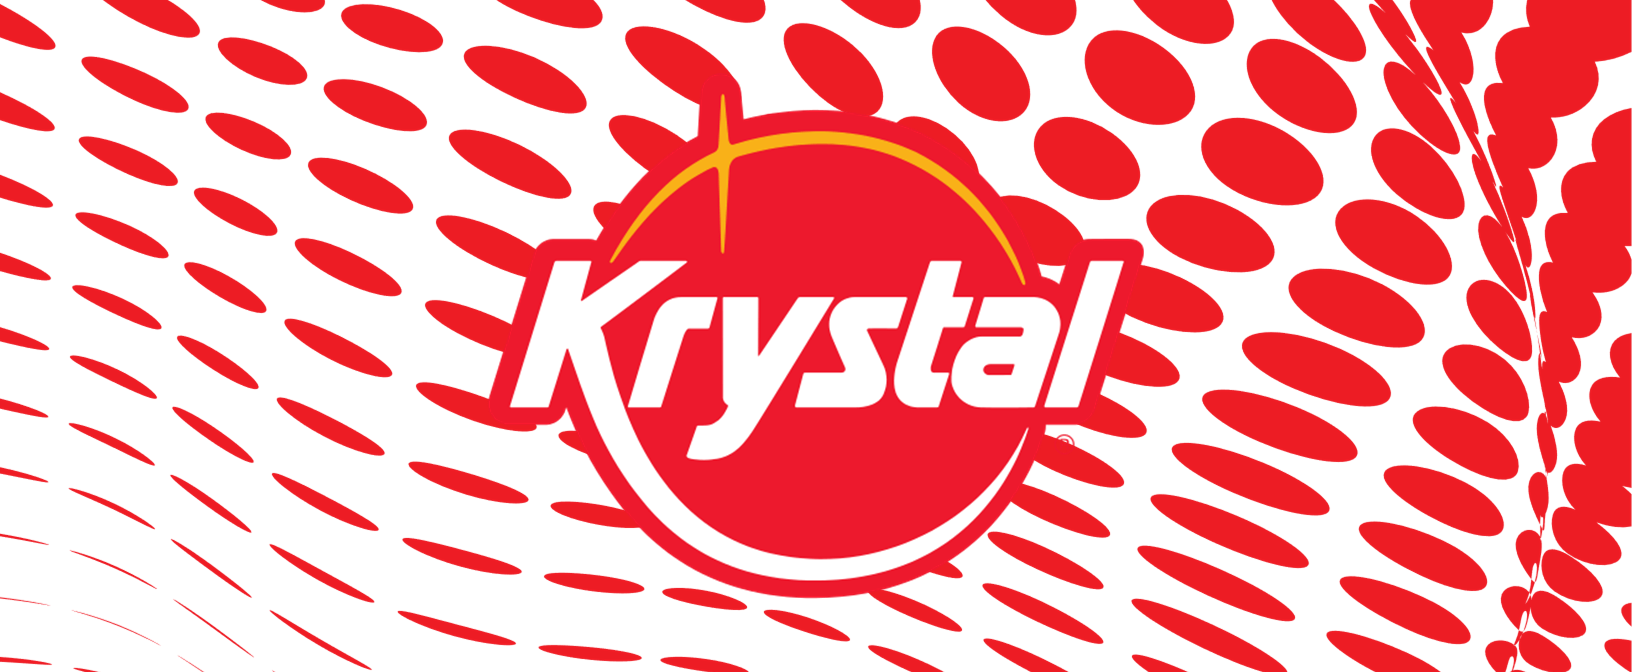 Krystal Customers “Get Sacked”